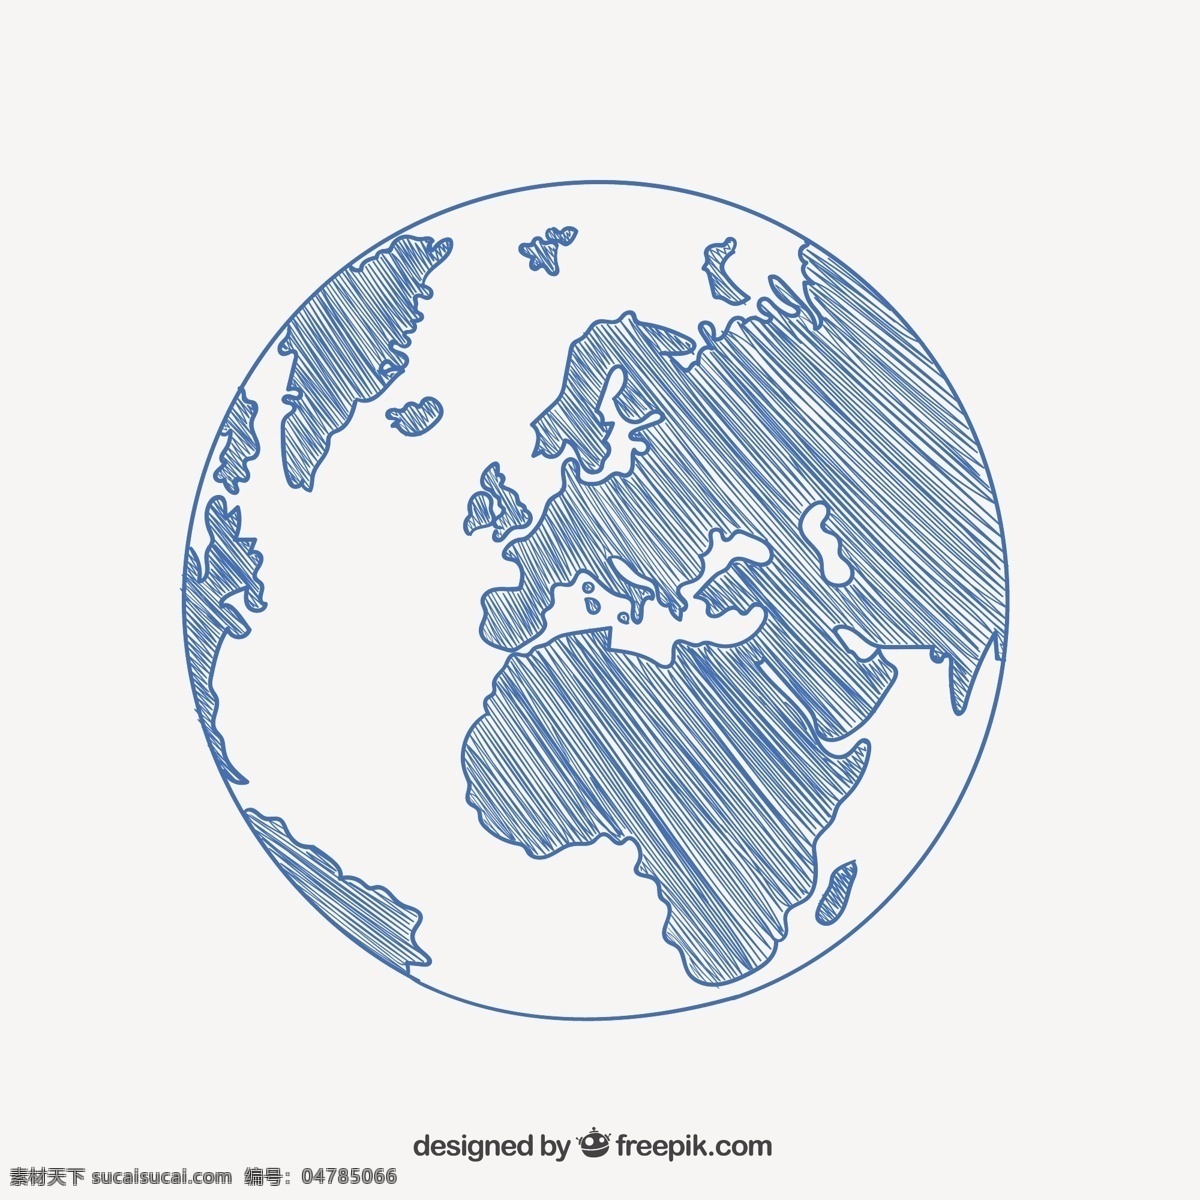 手绘地球草图 地图 地球 地球仪 素描 绘画 全球 绘制 手绘 大陆